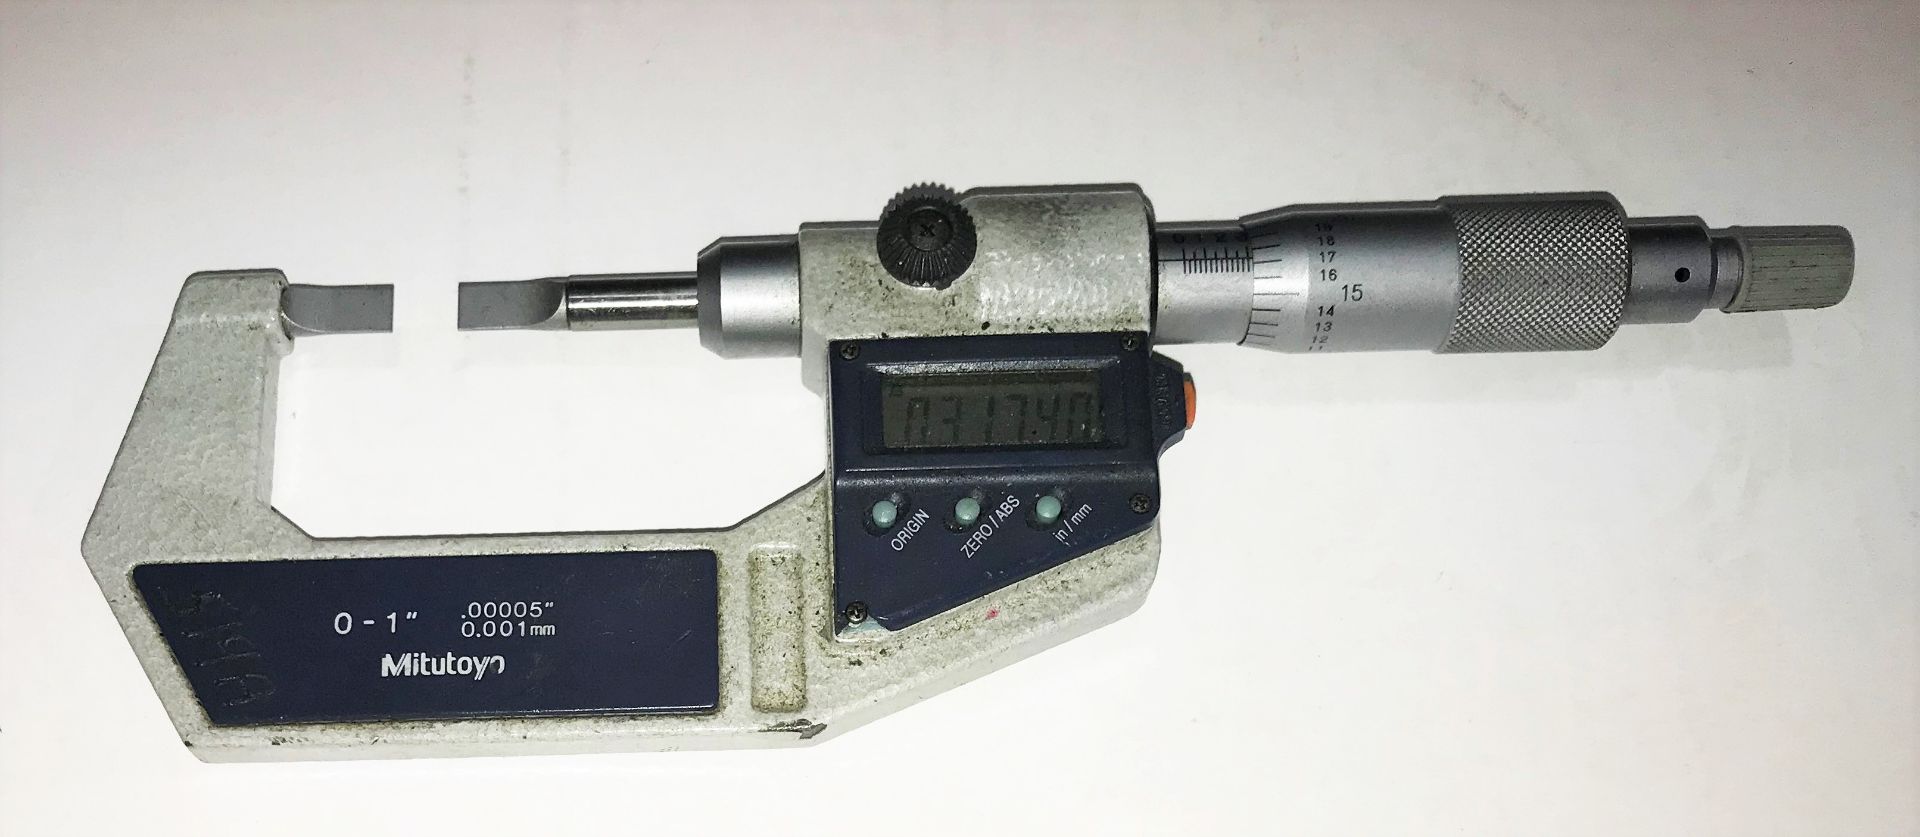 Mitutoyo 0 - 1" Digital Blade Micrometer